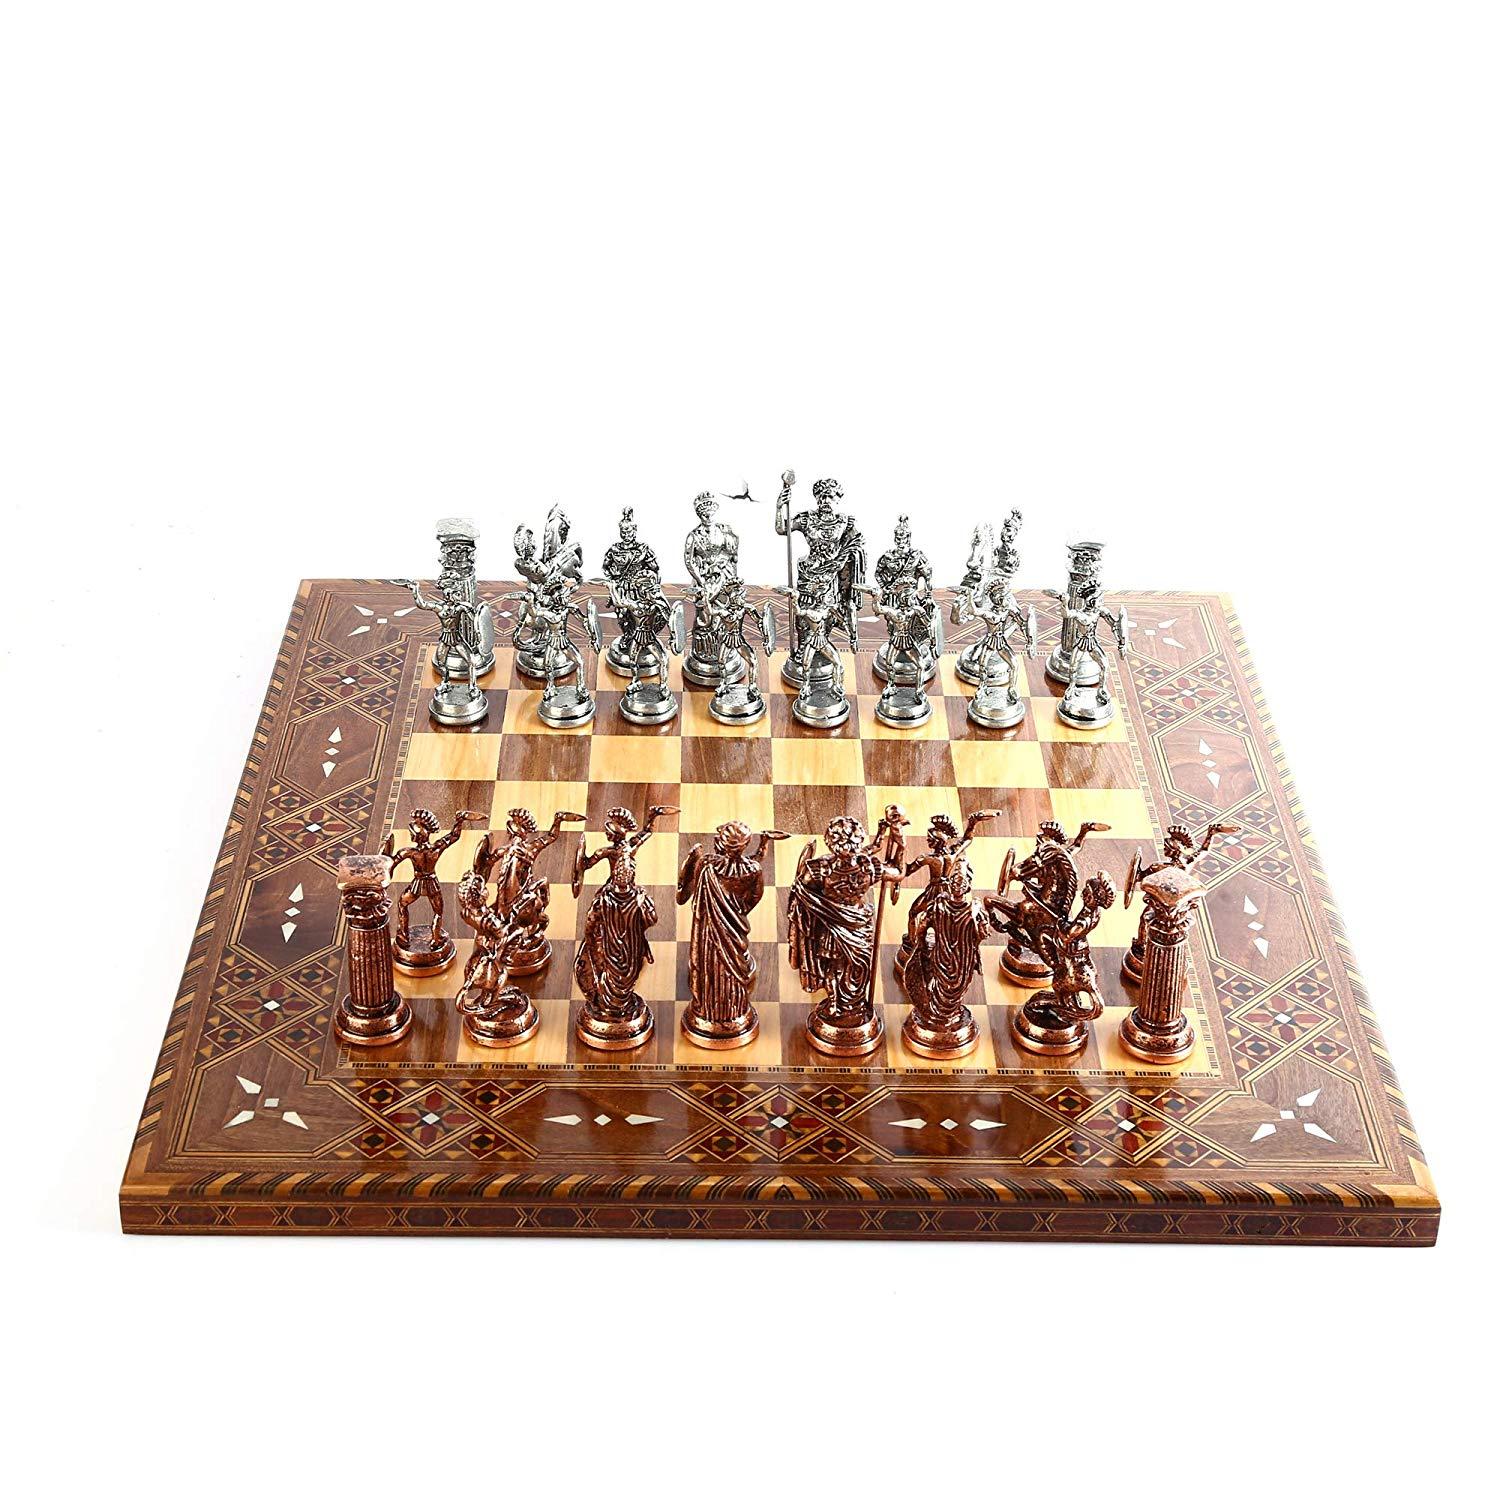 Изображение товара: Шахматный набор из антикварных медных римских фигур, фигурки ручной работы, шахматная доска из натурального массива дерева с оригинальной жемчужиной, король 10 см